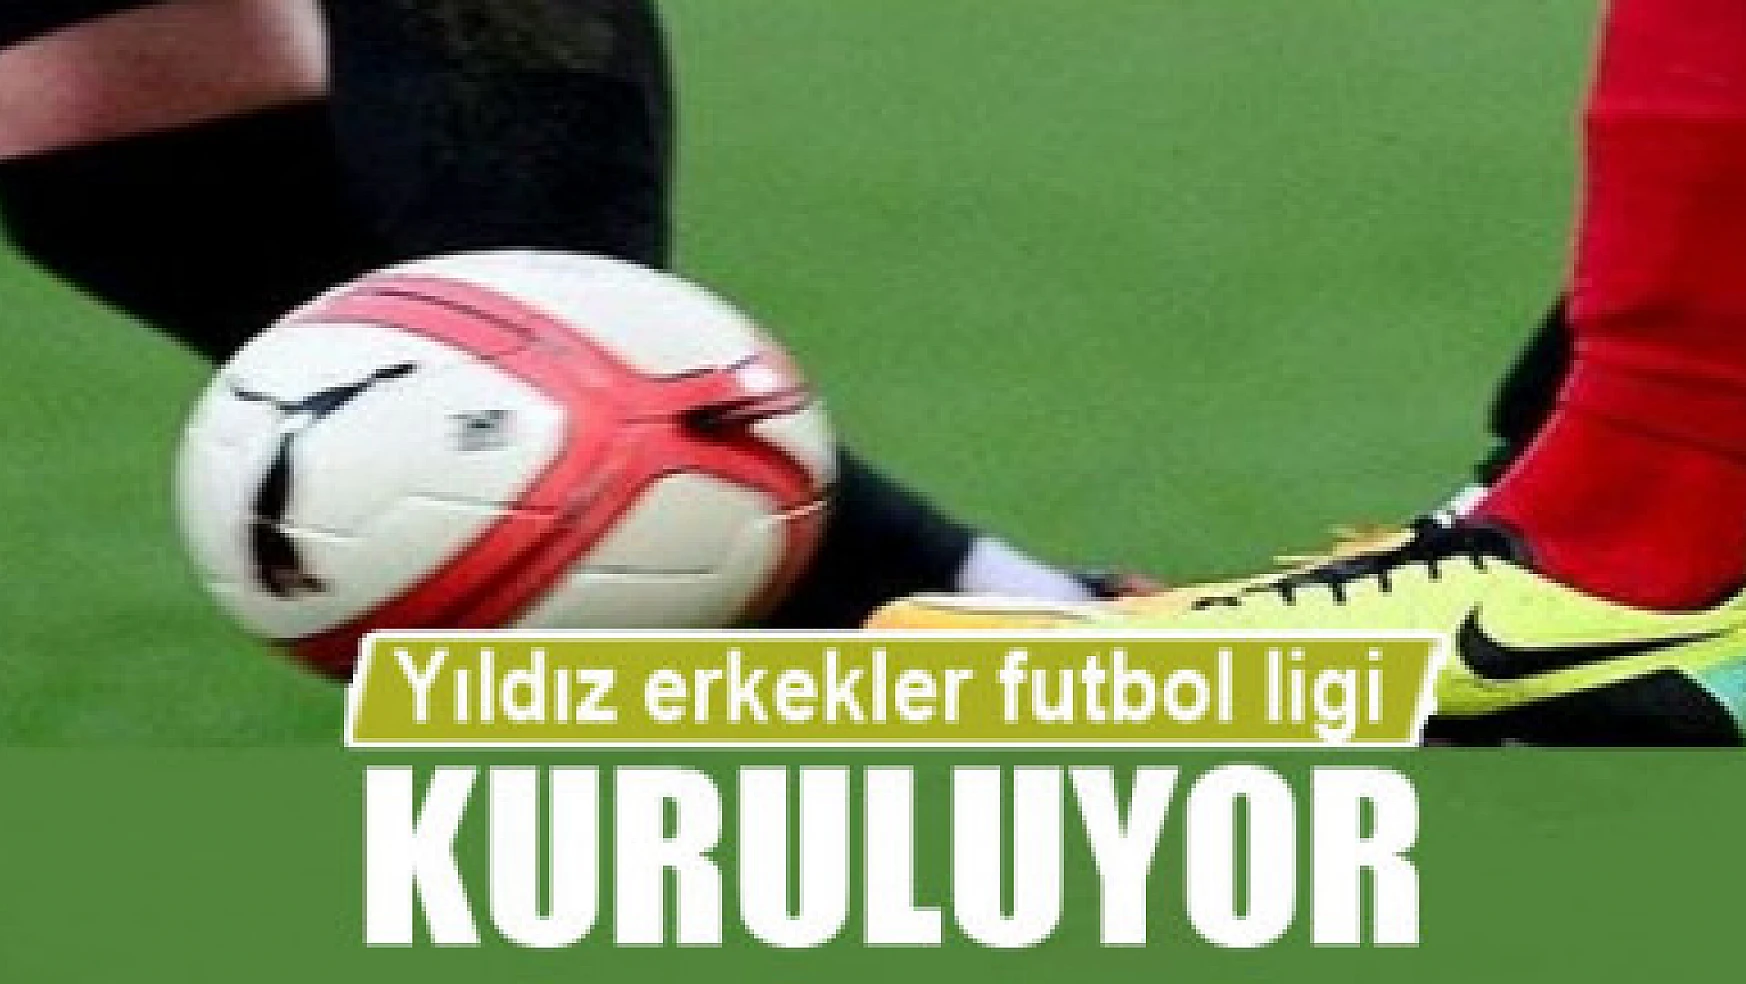 İpekyolu Belediyesi 'yıldız erkekler futbol ligi' kuruyor